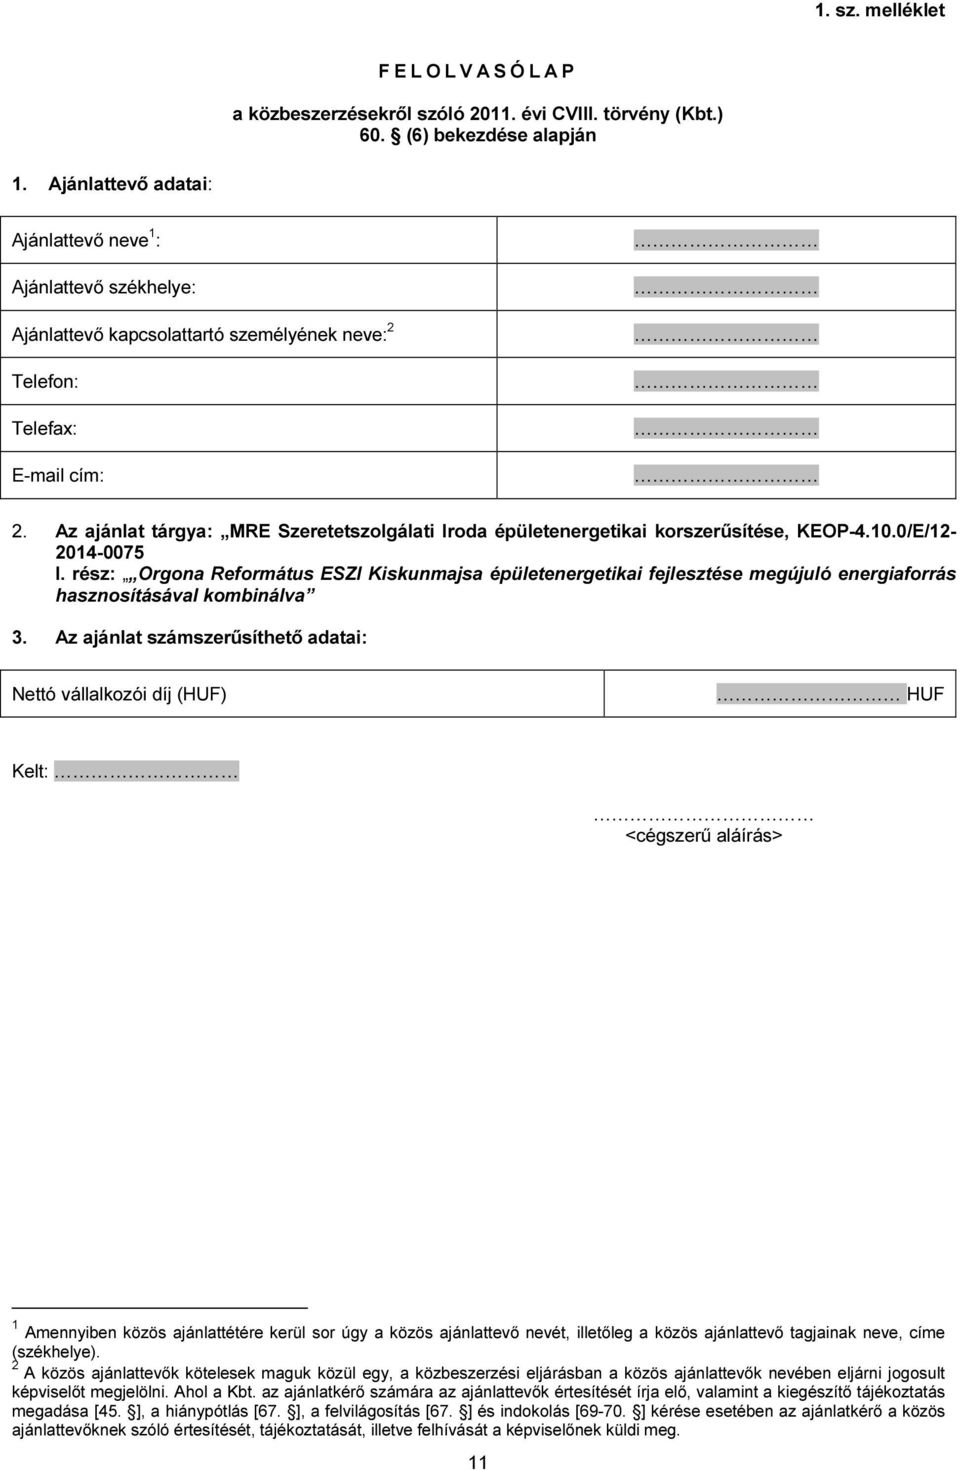 Az ajánlat tárgya: MRE Szeretetszolgálati Iroda épületenergetikai korszerűsítése, KEOP-4.10.0/E/12-2014-0075 3.